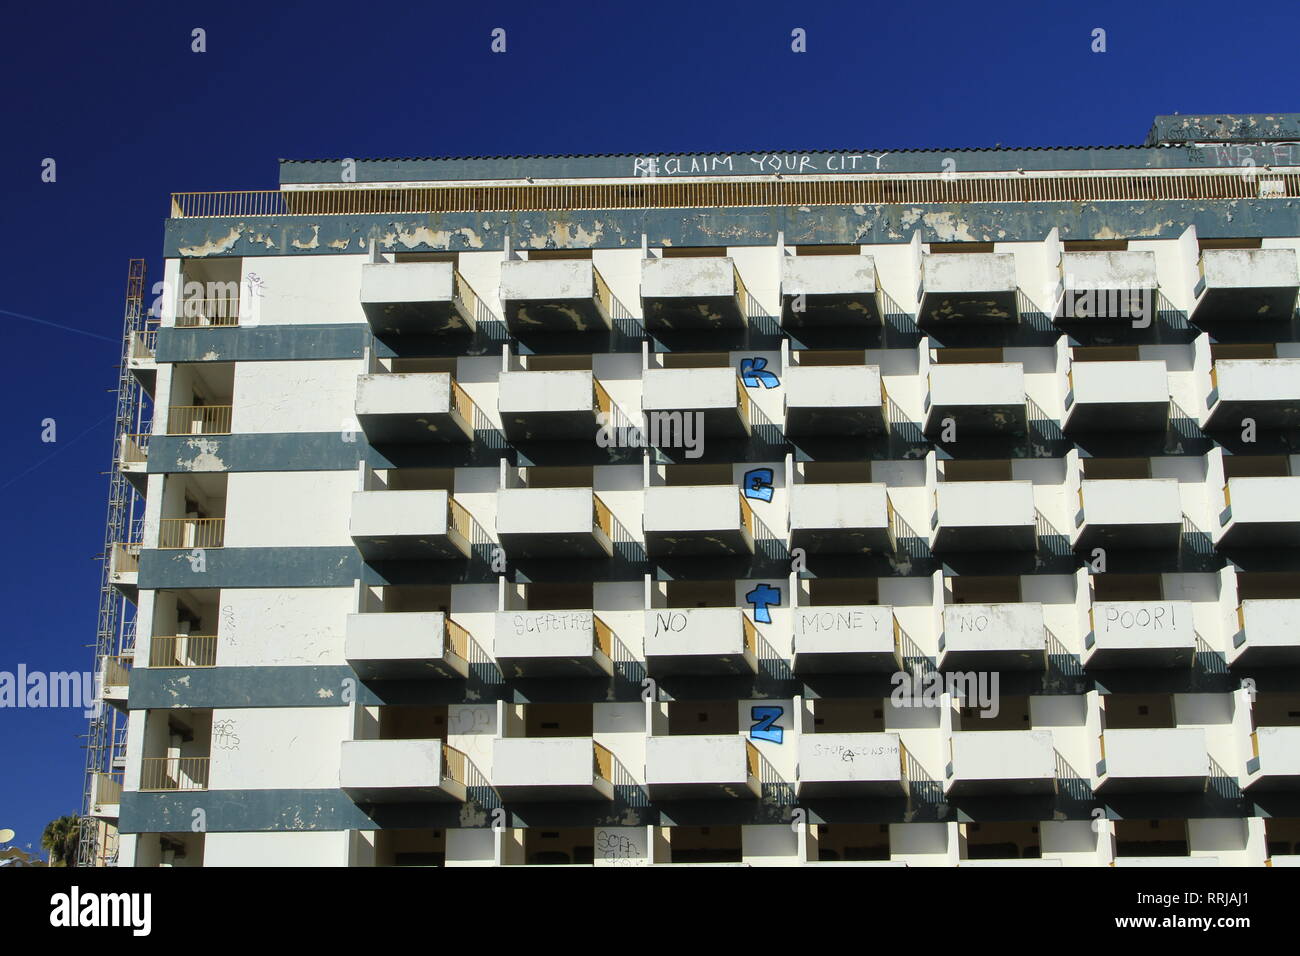 Grande motel essendo costruito abbandonato dopo la crisi finanziaria ha colpito il Portogallo, a ovest di Lagos, Algarve, Portogallo meridionale Foto Stock